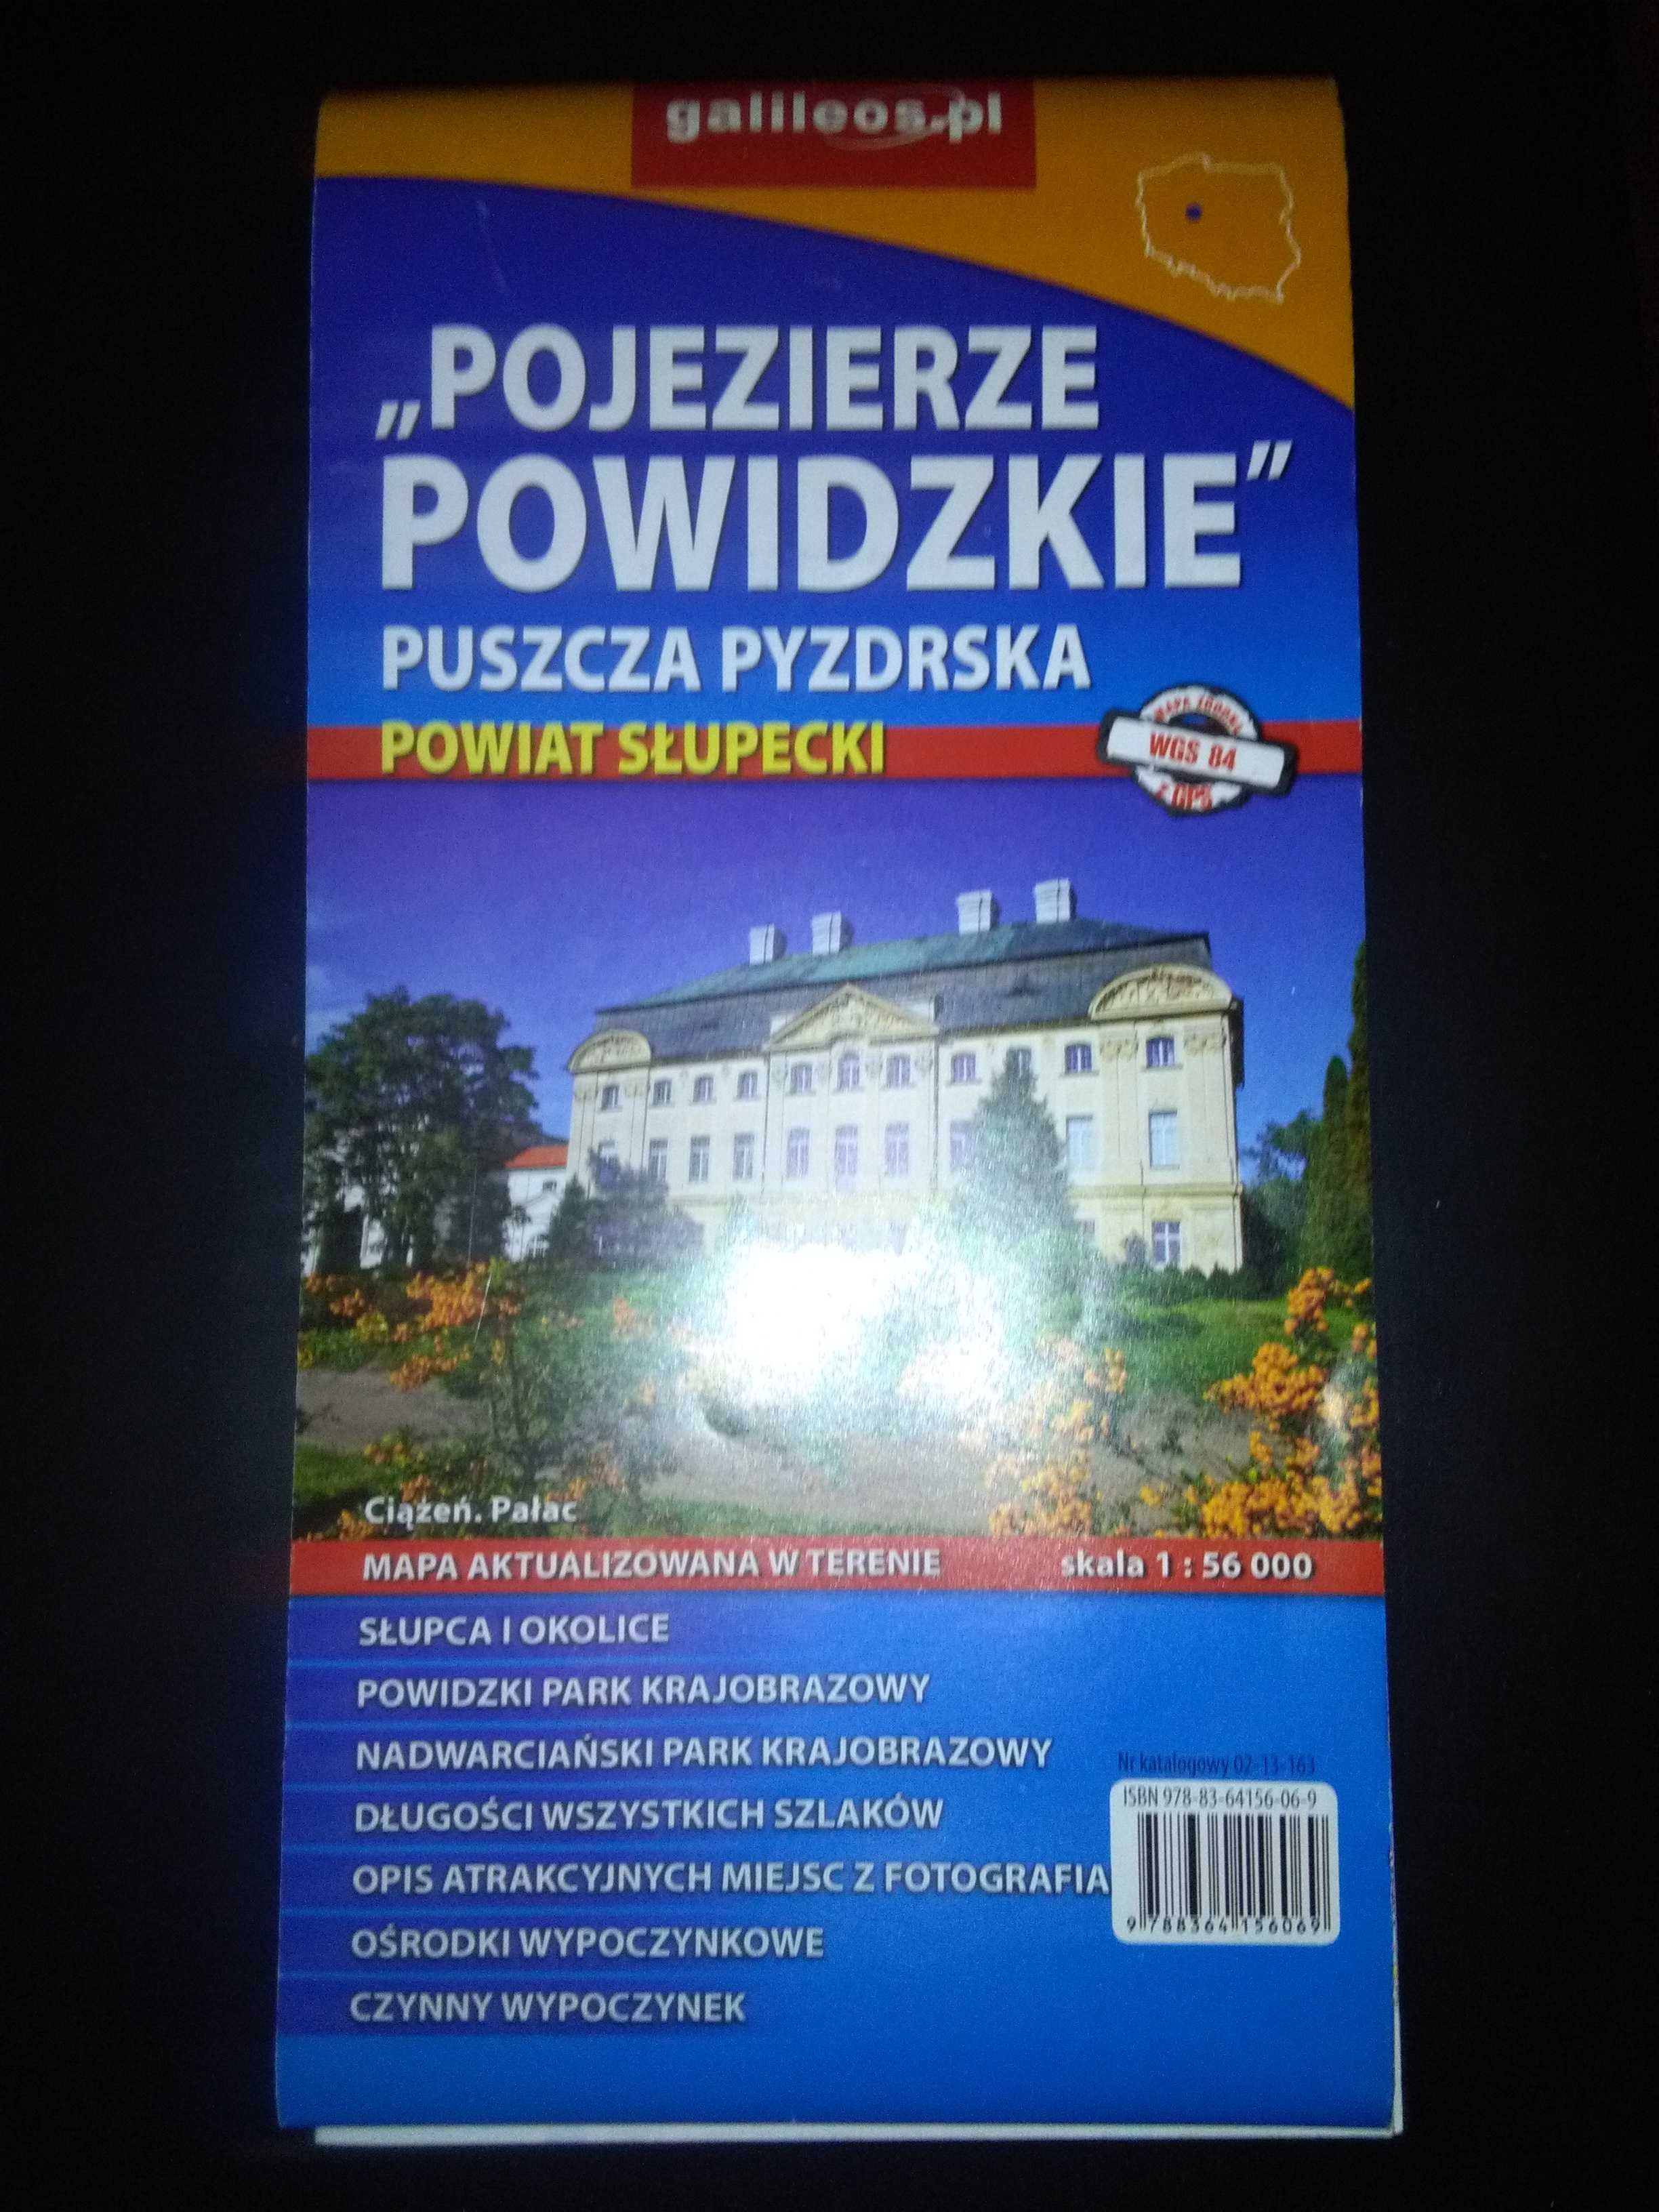 Mapa Pojezierze Powidzkie puszcza pyzdrska 1:56000